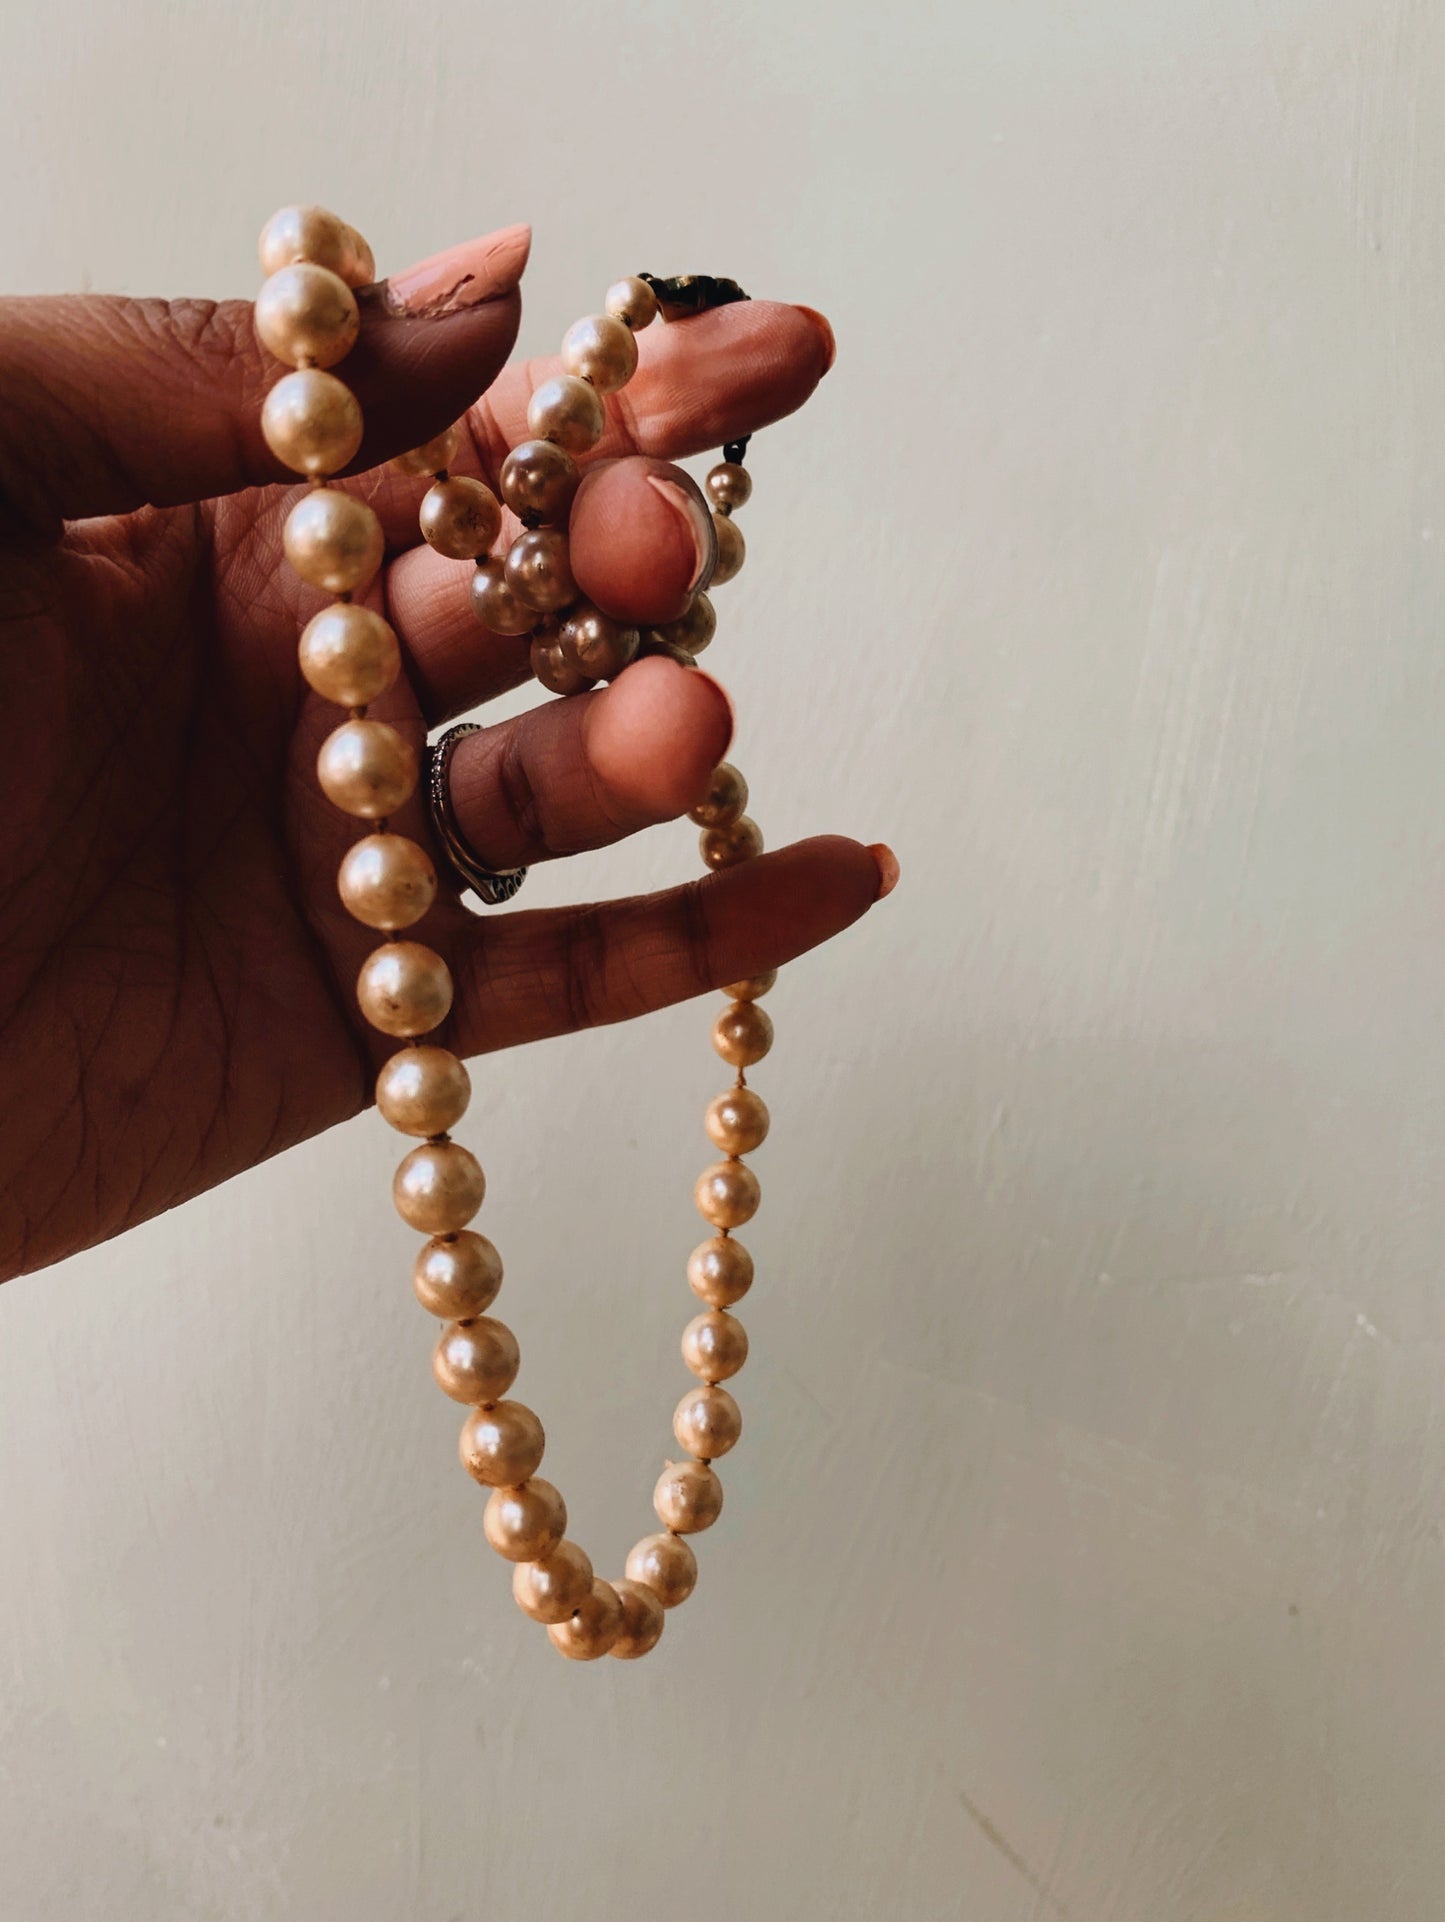 Vintage Pearls